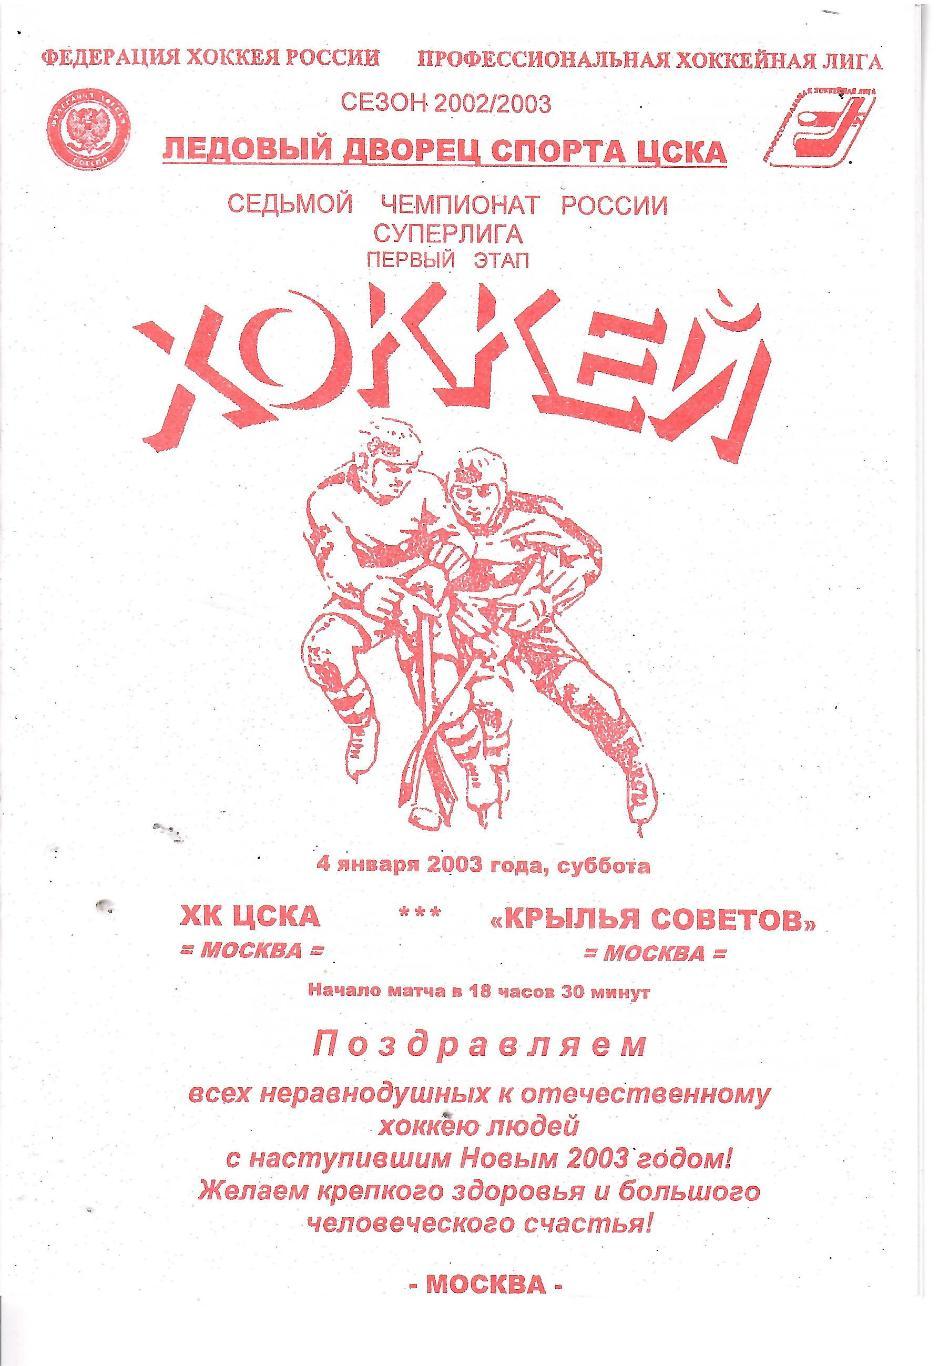 2003 Хоккей ЦСКА - Крылья Советов (04.01)